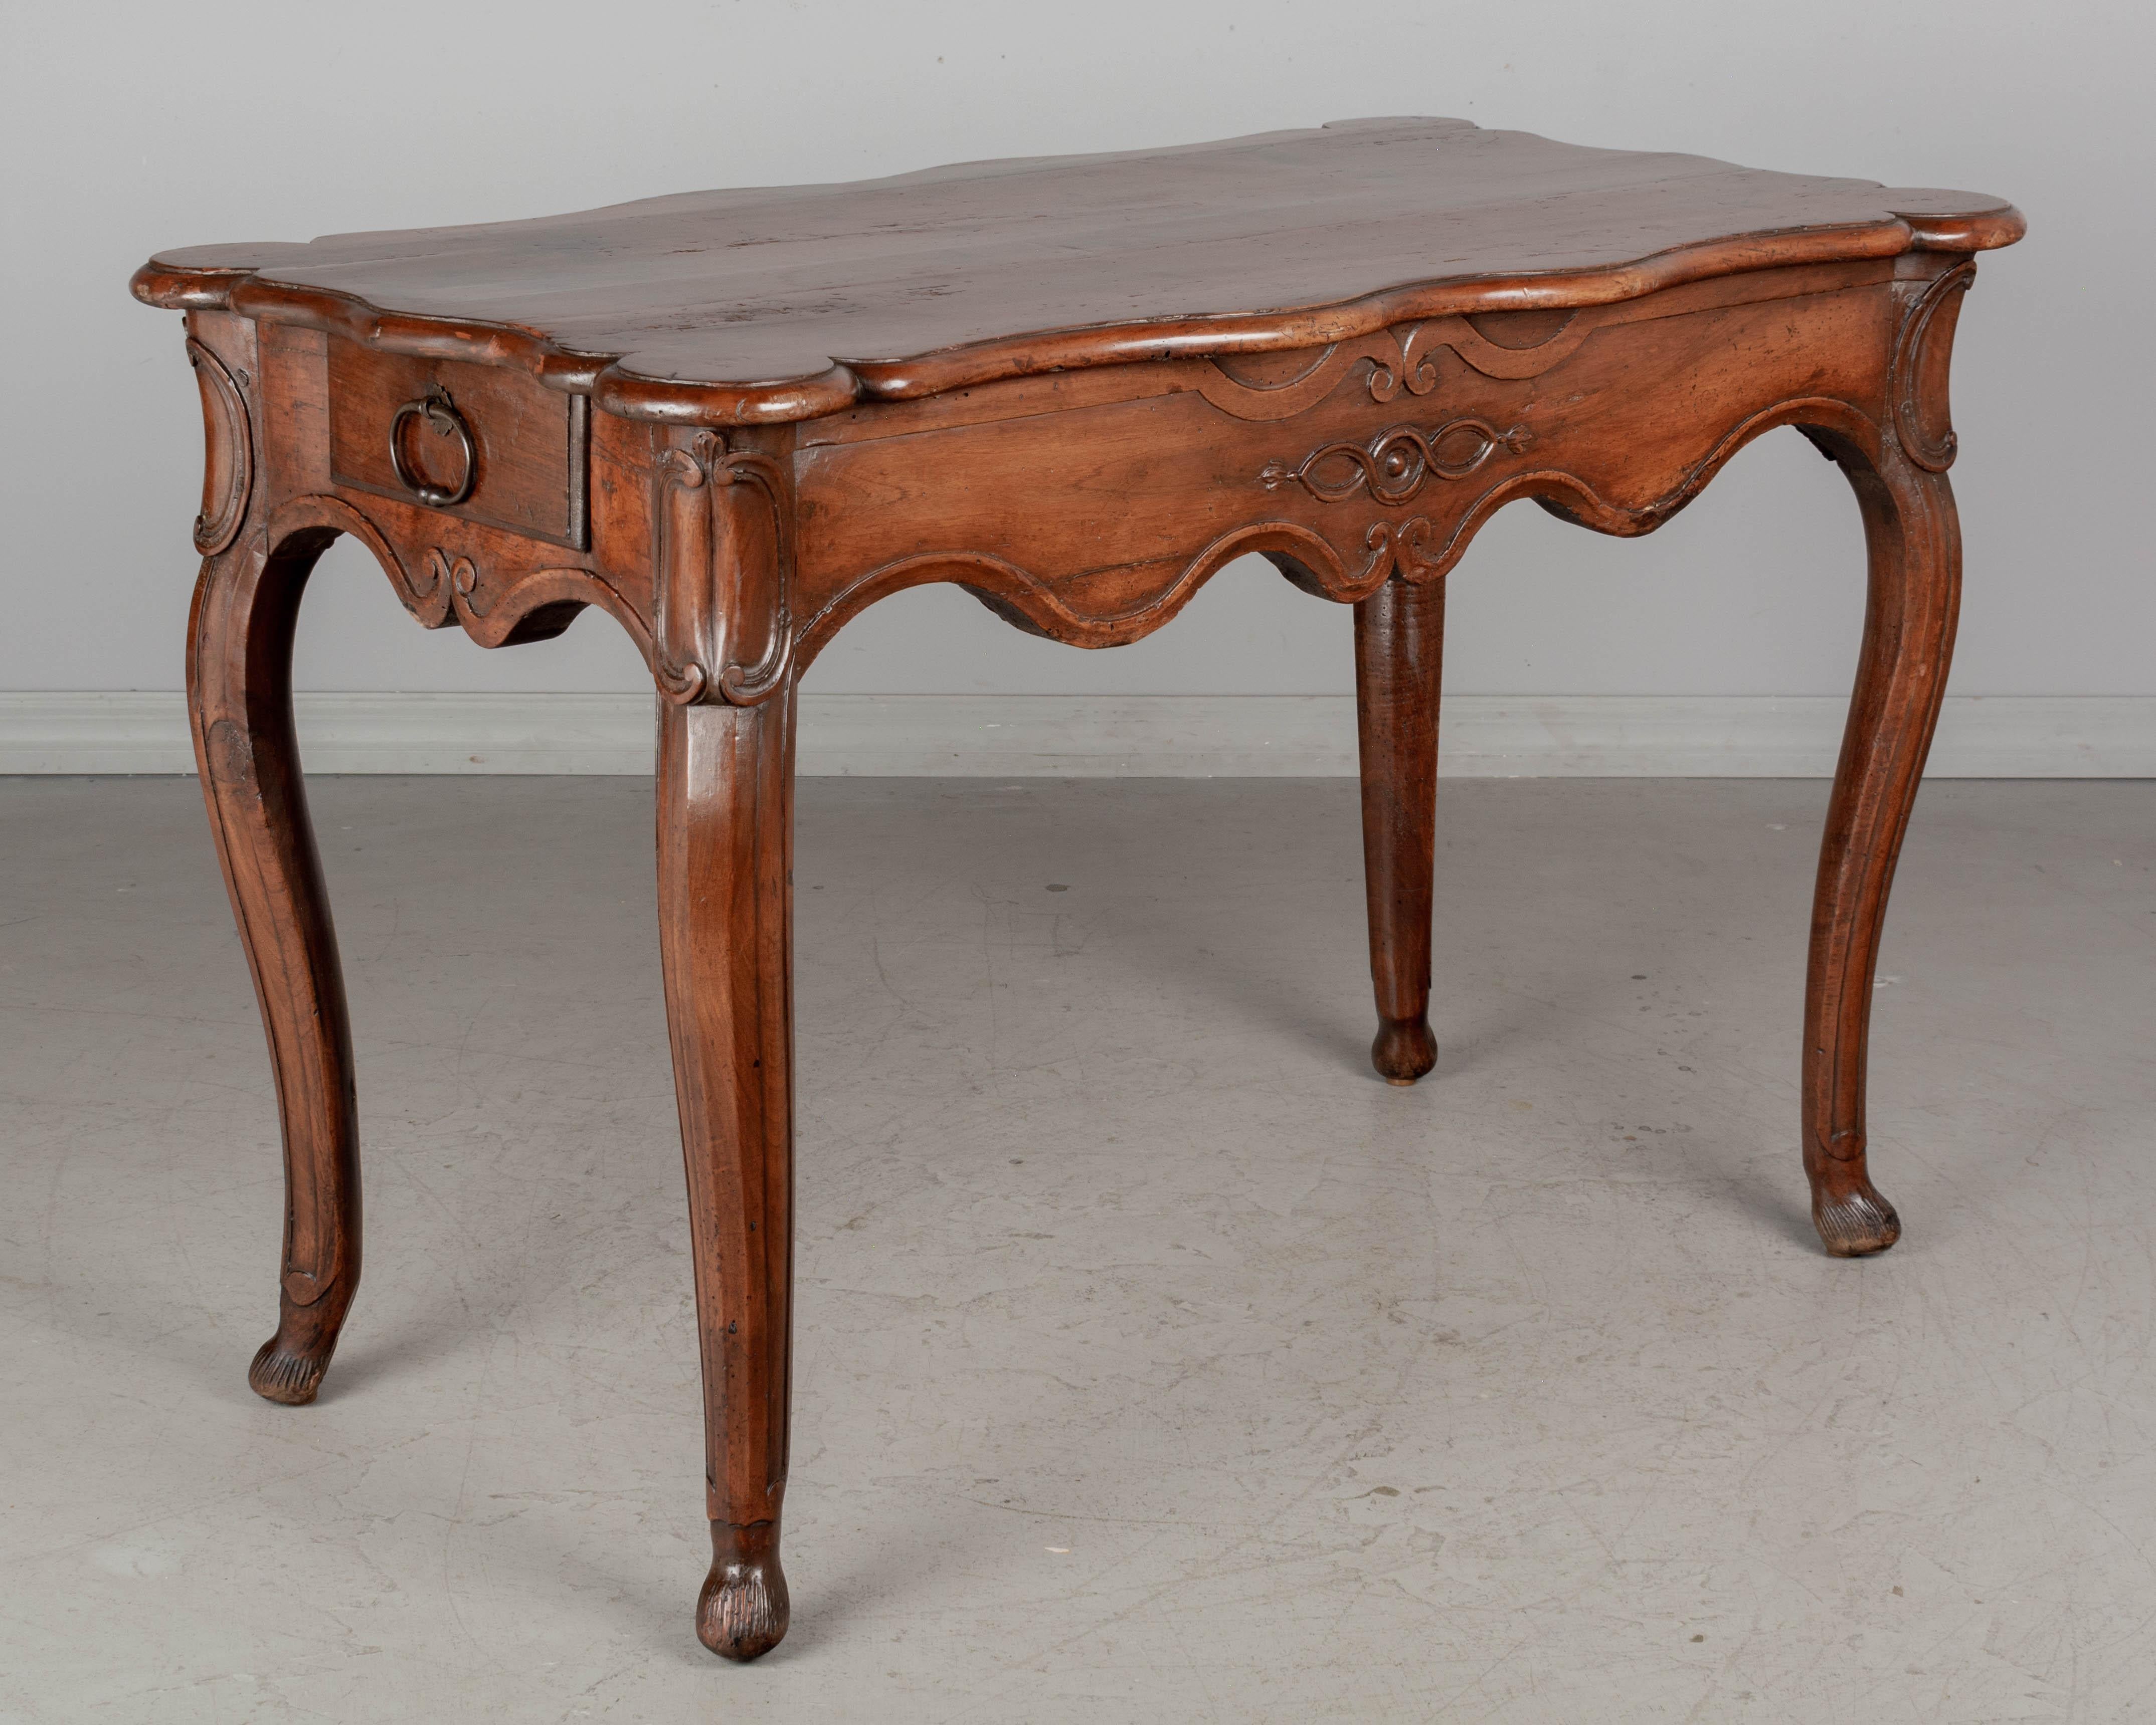 Ein französischer Louis-XV-Tisch aus der Provence aus dem 18. Jahrhundert. Aus massivem Nussbaumholz mit tiefer, handgeschnitzter Schürze und dicken Cabriole-Beinen. Zwei schwalbenschwanzförmige Schubladen, eine auf jeder Seite, jeweils mit eisernen